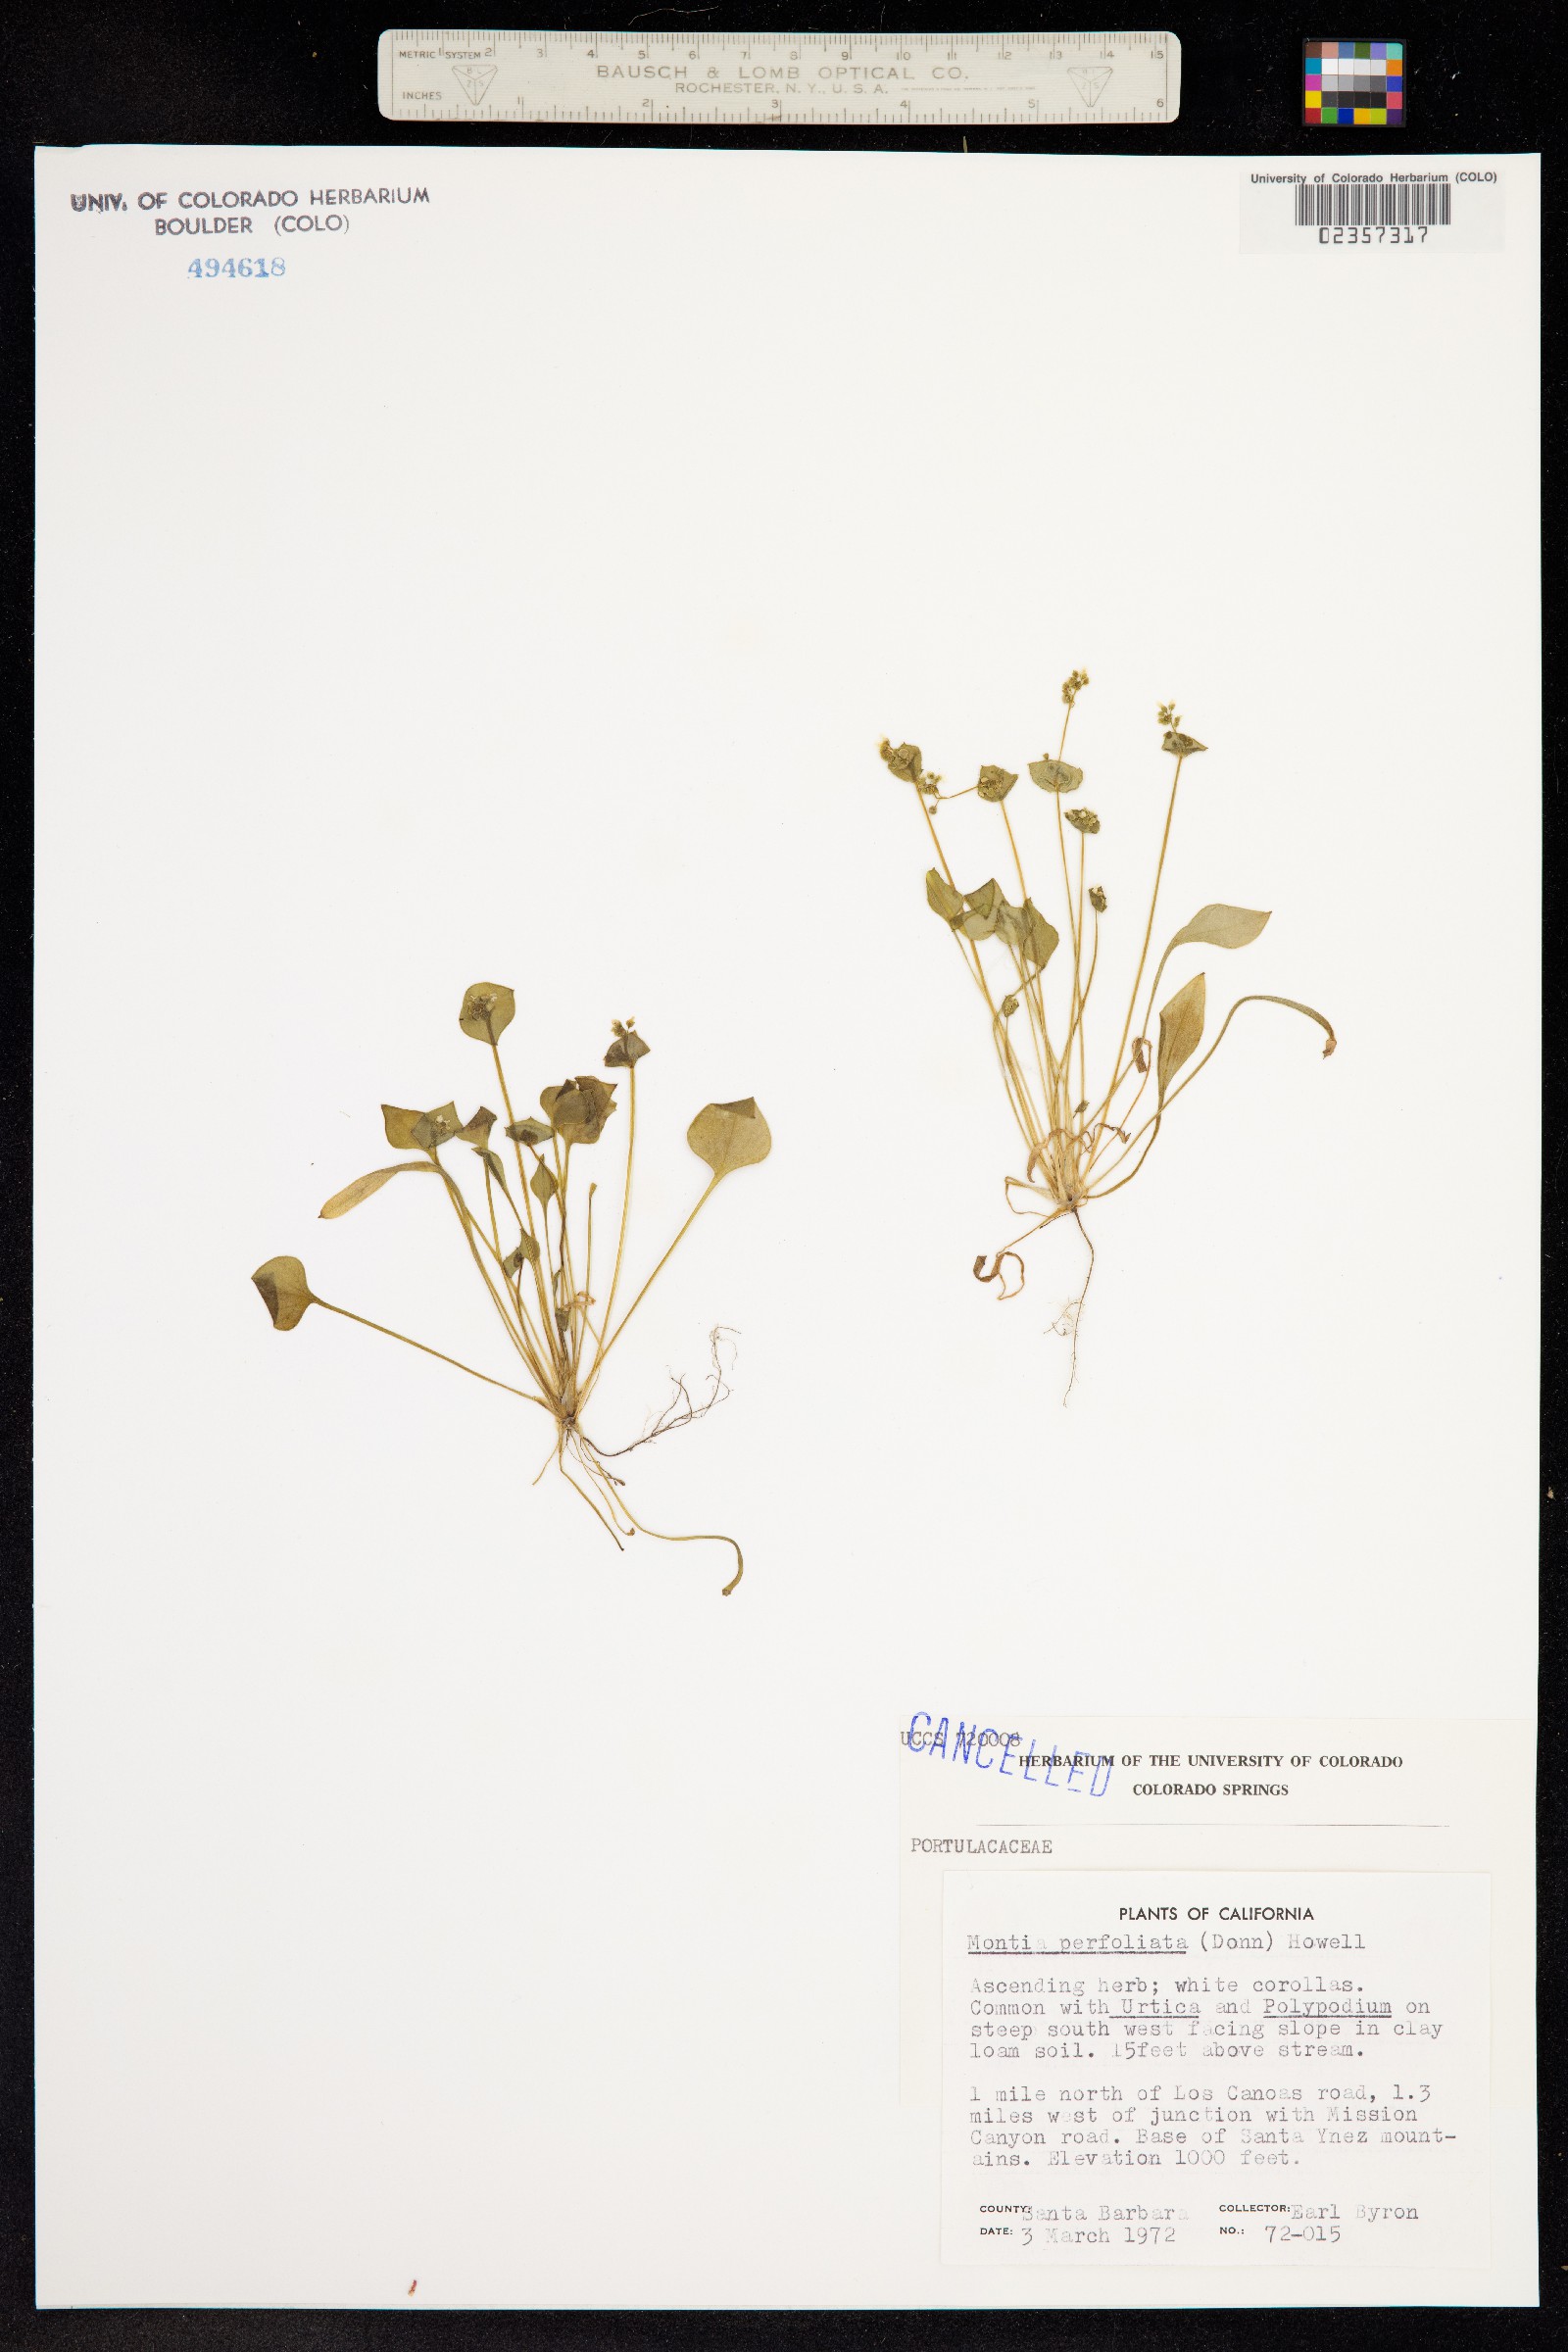 Claytonia perfoliata ssp. perfoliata image